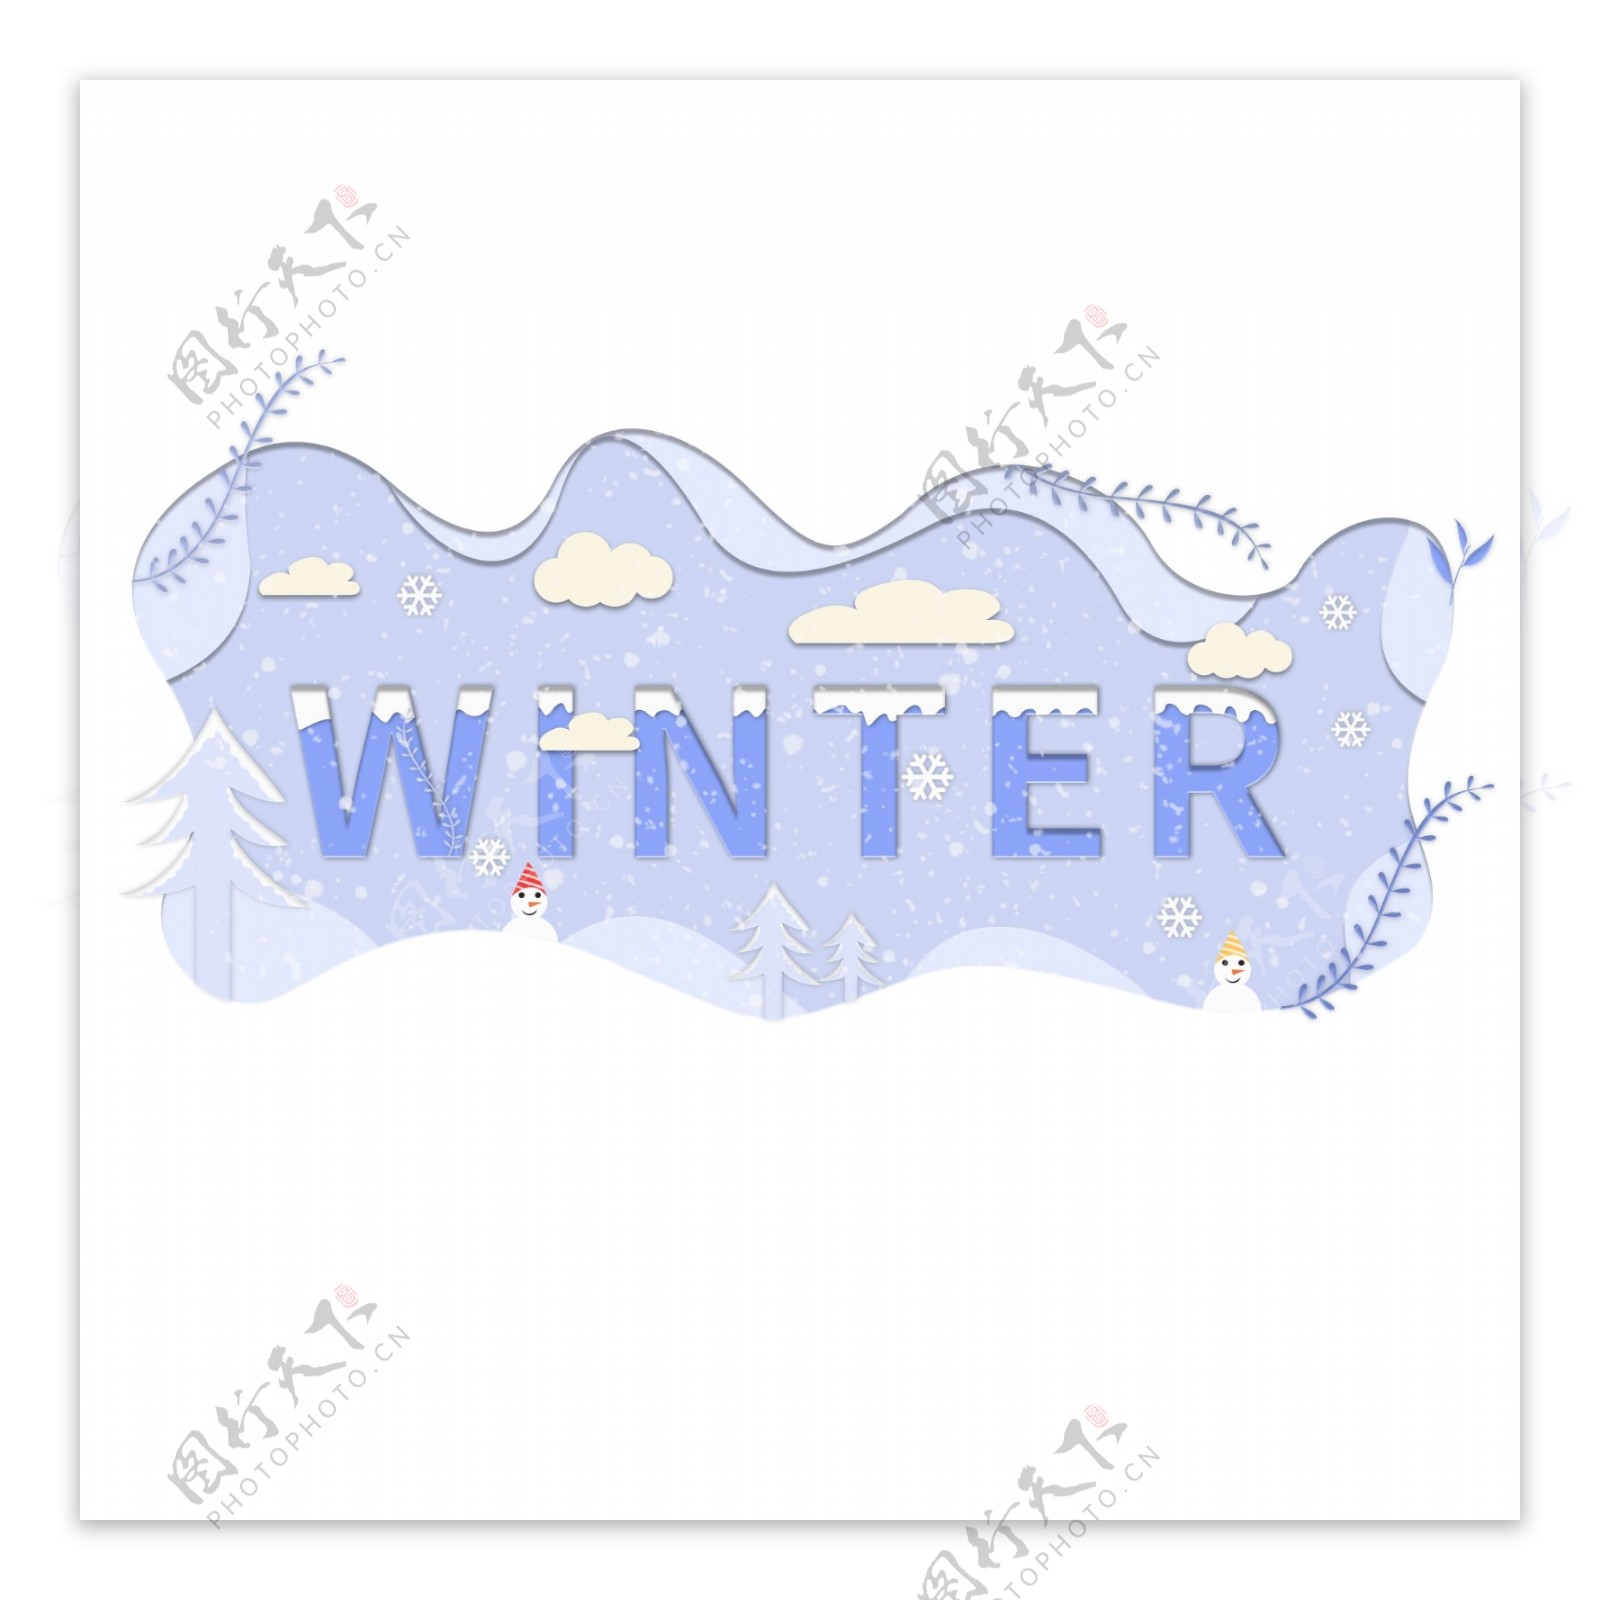 印象剪纸风WINTER冬日元素装饰图案